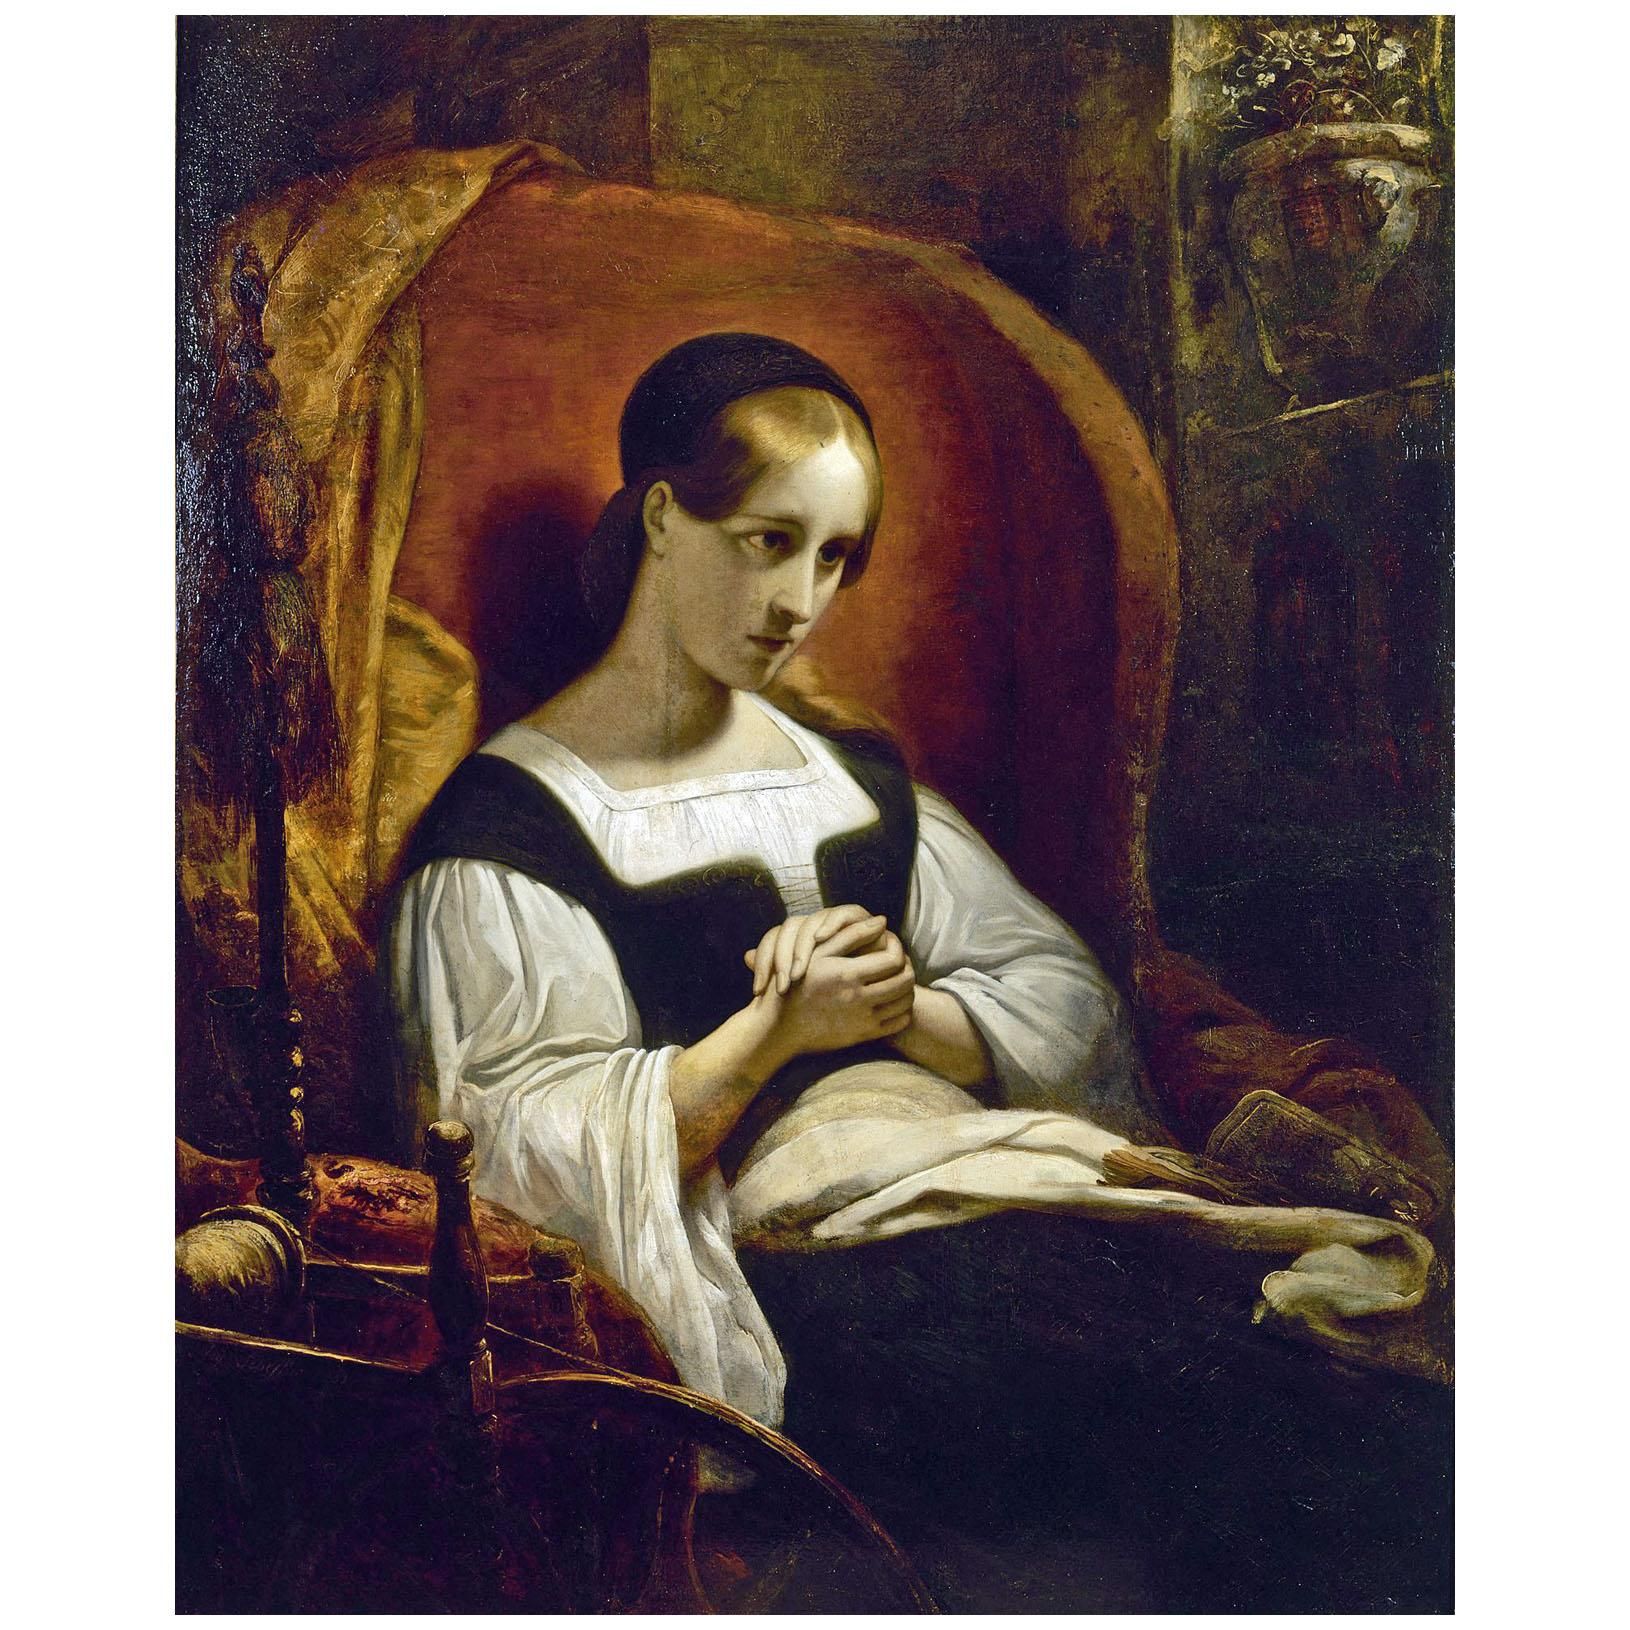 Ary Scheffer. Marguerite au rouet. 1831. Musee de la Vie romantique Paris